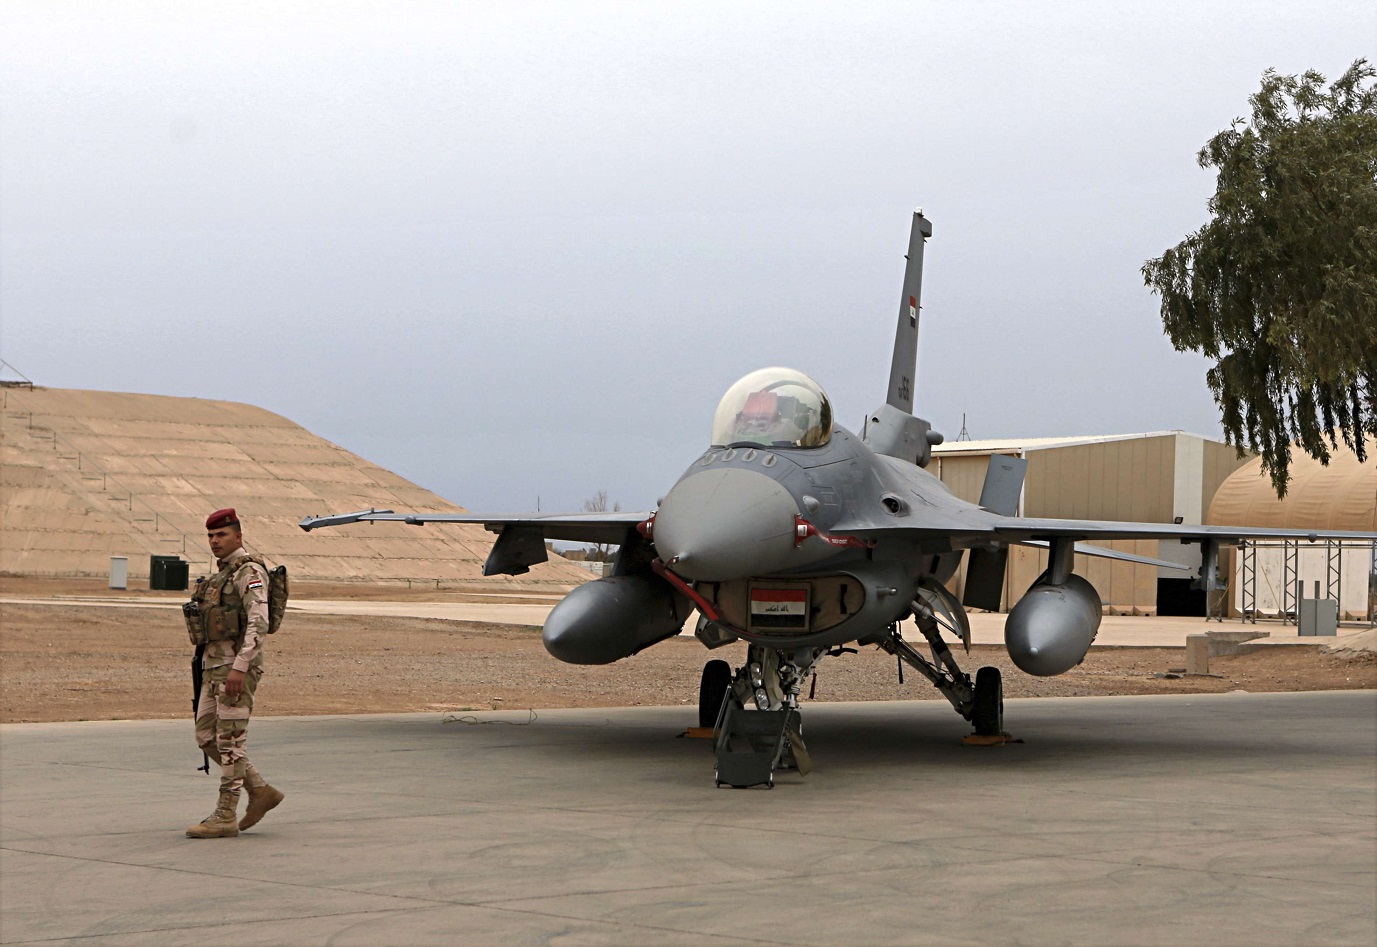 مقاتلة تابعة للقوات الجوية العراقية من طراز F-16 أميركية الصنع